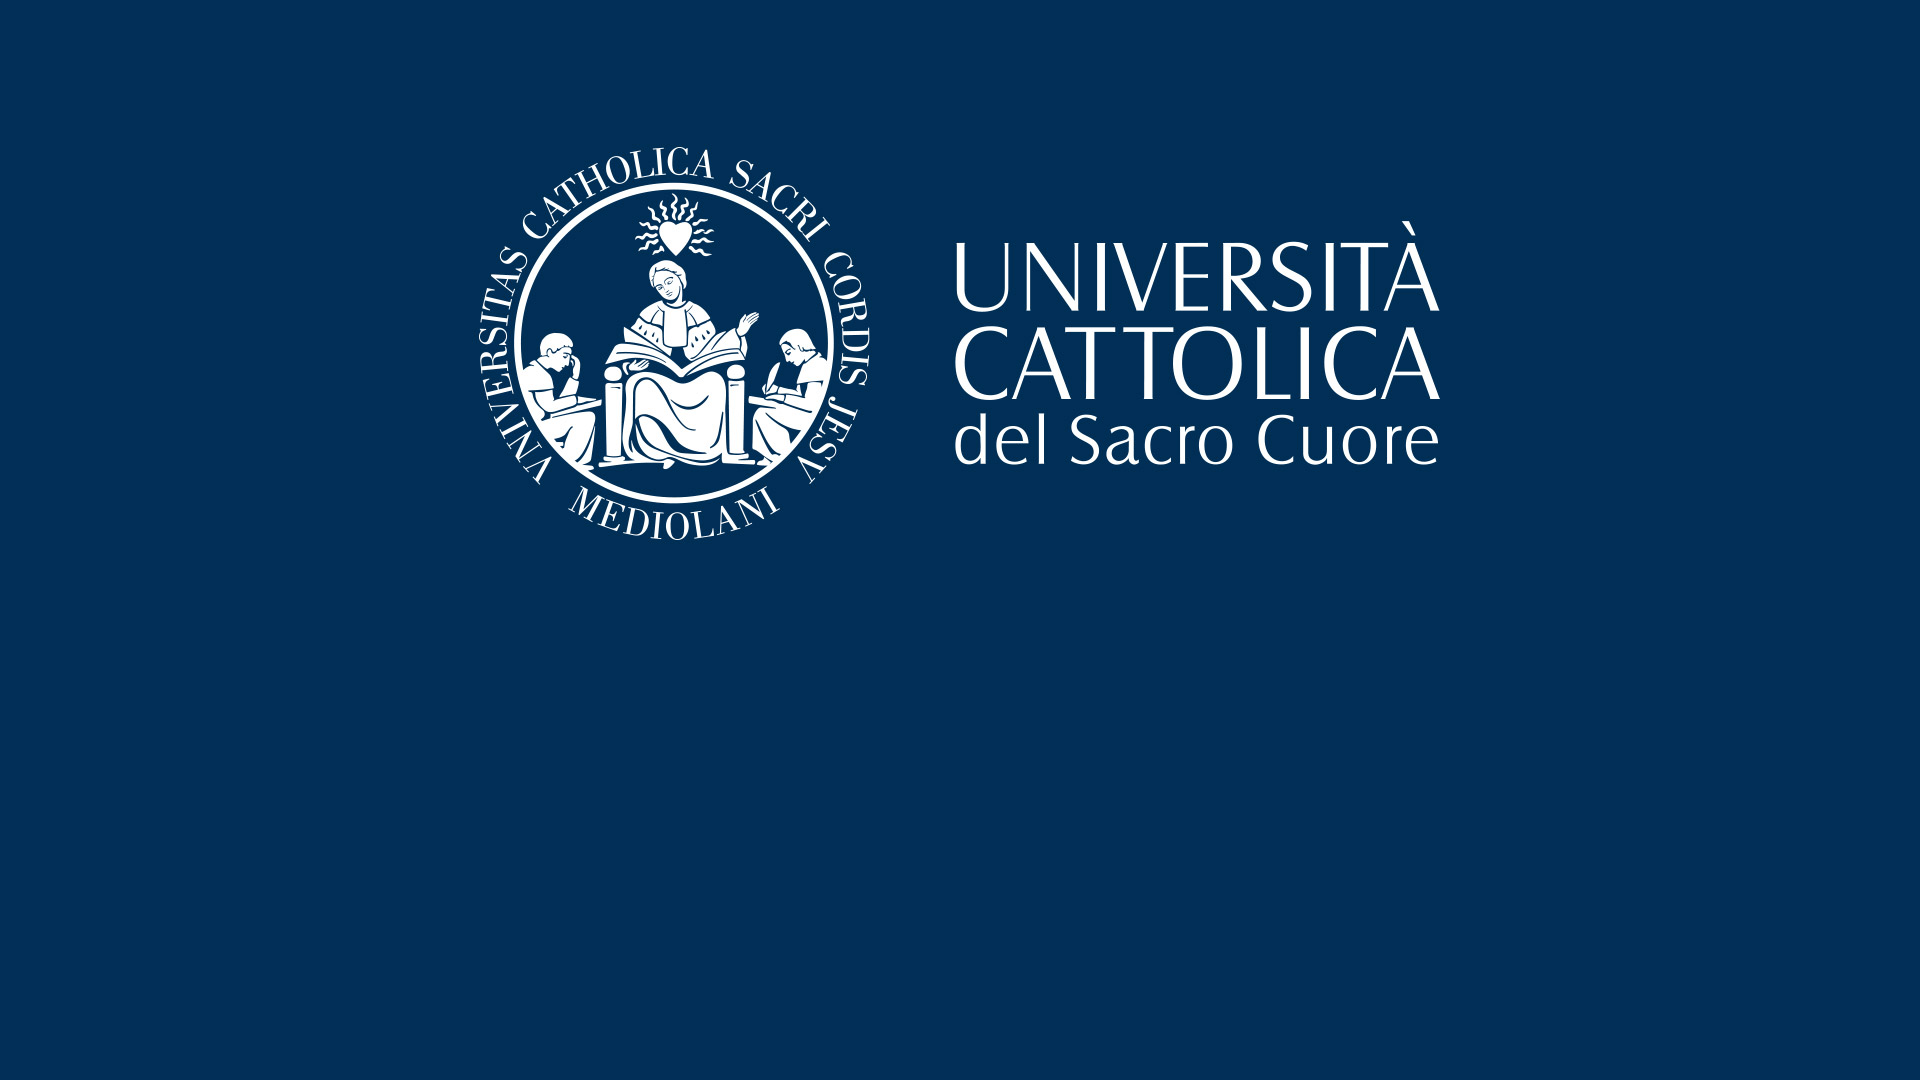 Giorgio Armani supports students of the Università Cattolica del Sacro Cuore with two scholarships